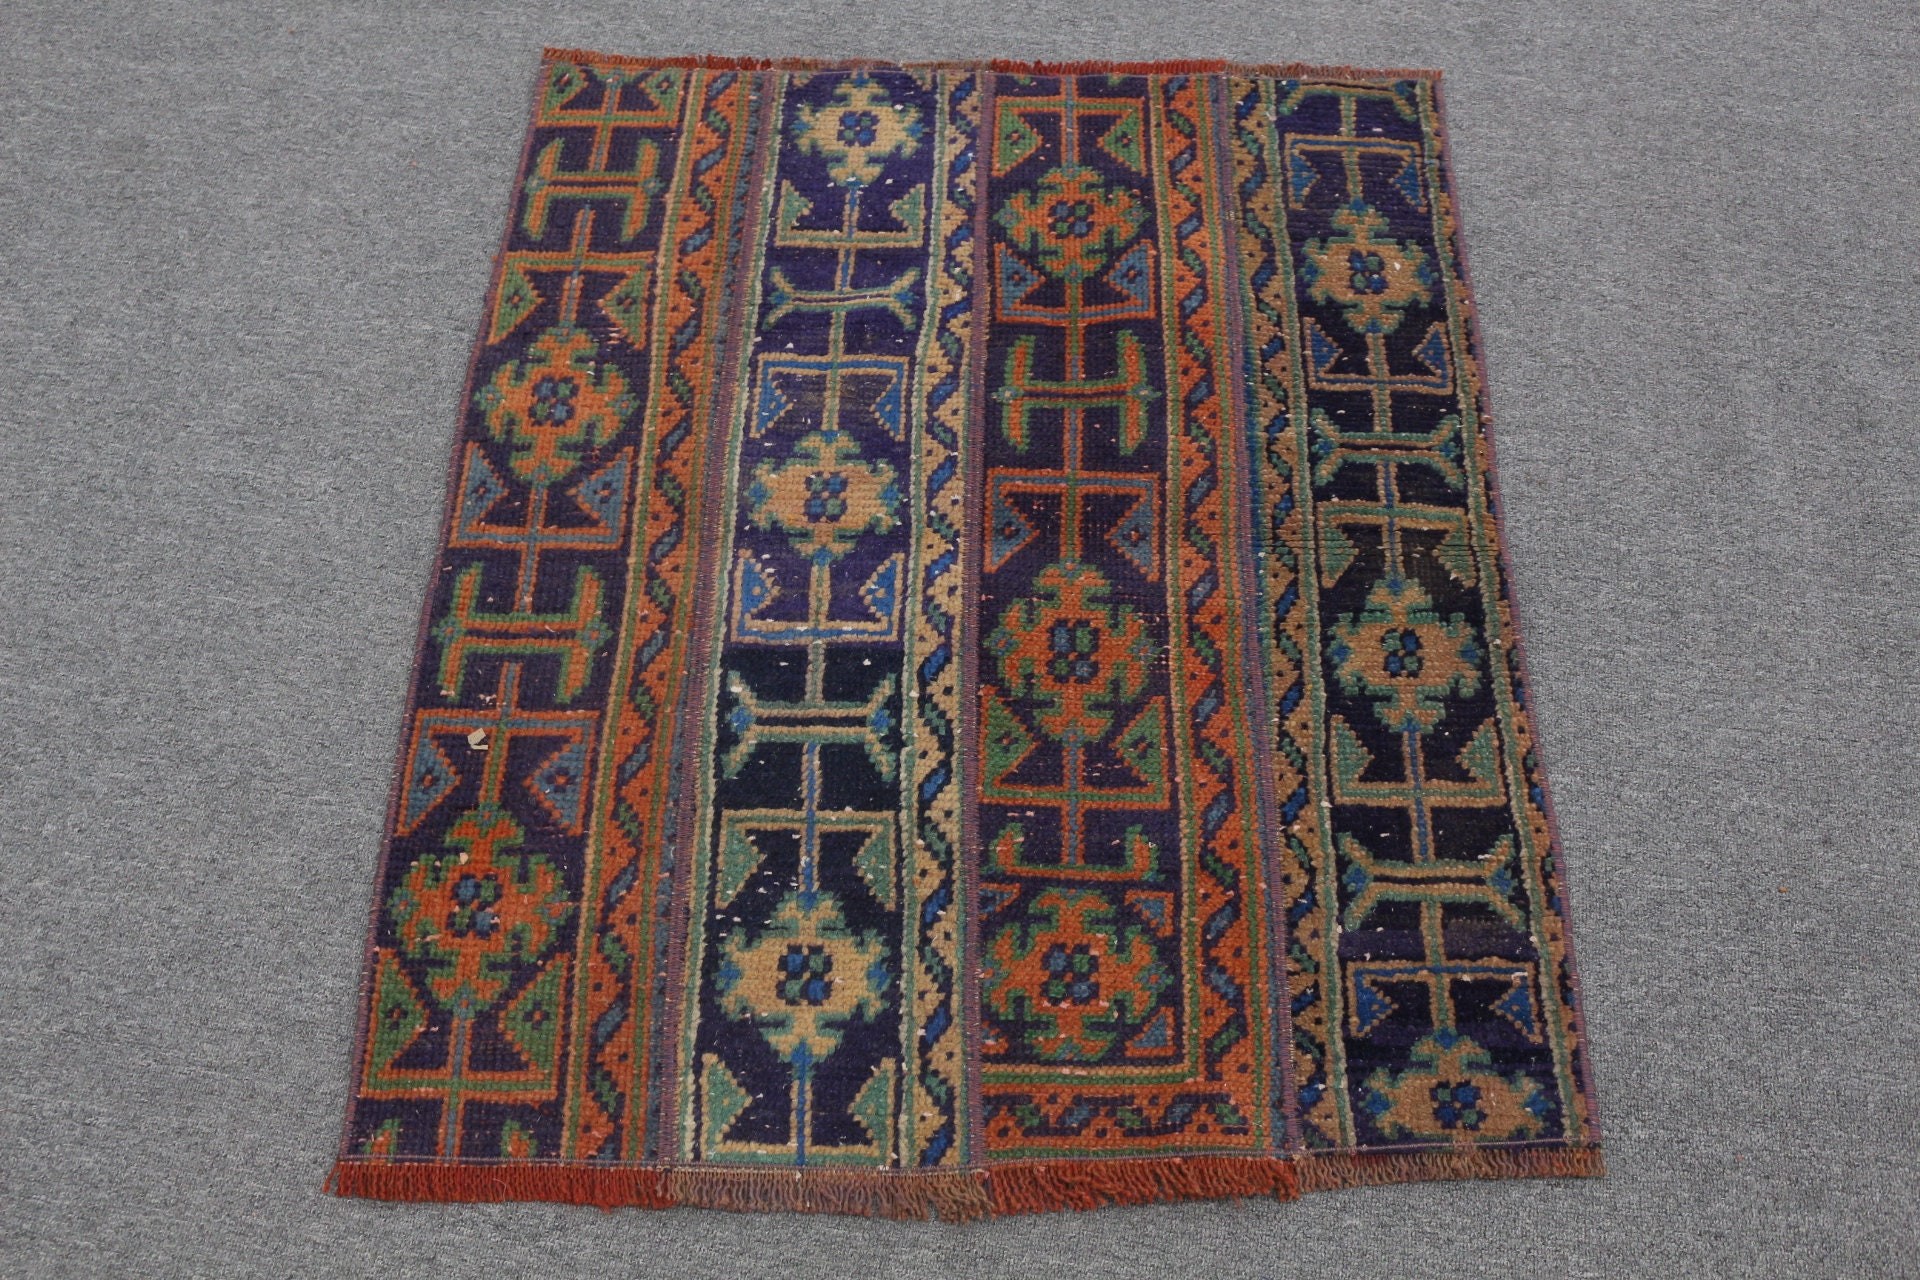 Rugs for Door Mat, Vintage Rugs, Wool Rug, Turkish Rug, Dorm Rug, Anatolian Rug, Orange  2.6x3.1 ft Small Rug, Bathroom Rug